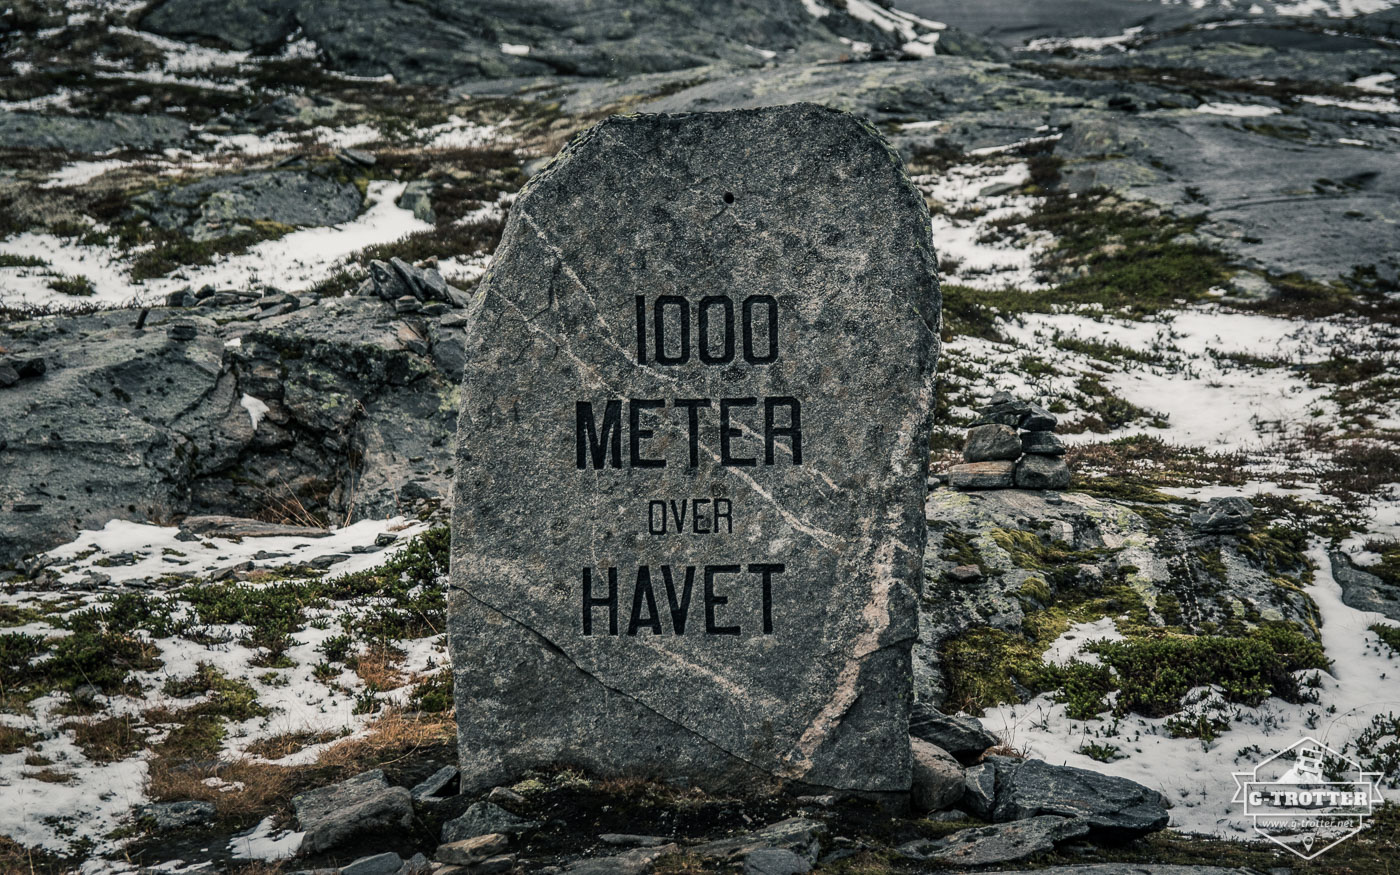 Bild 41 der Bildergalerie “4700 km durch Norwegen”